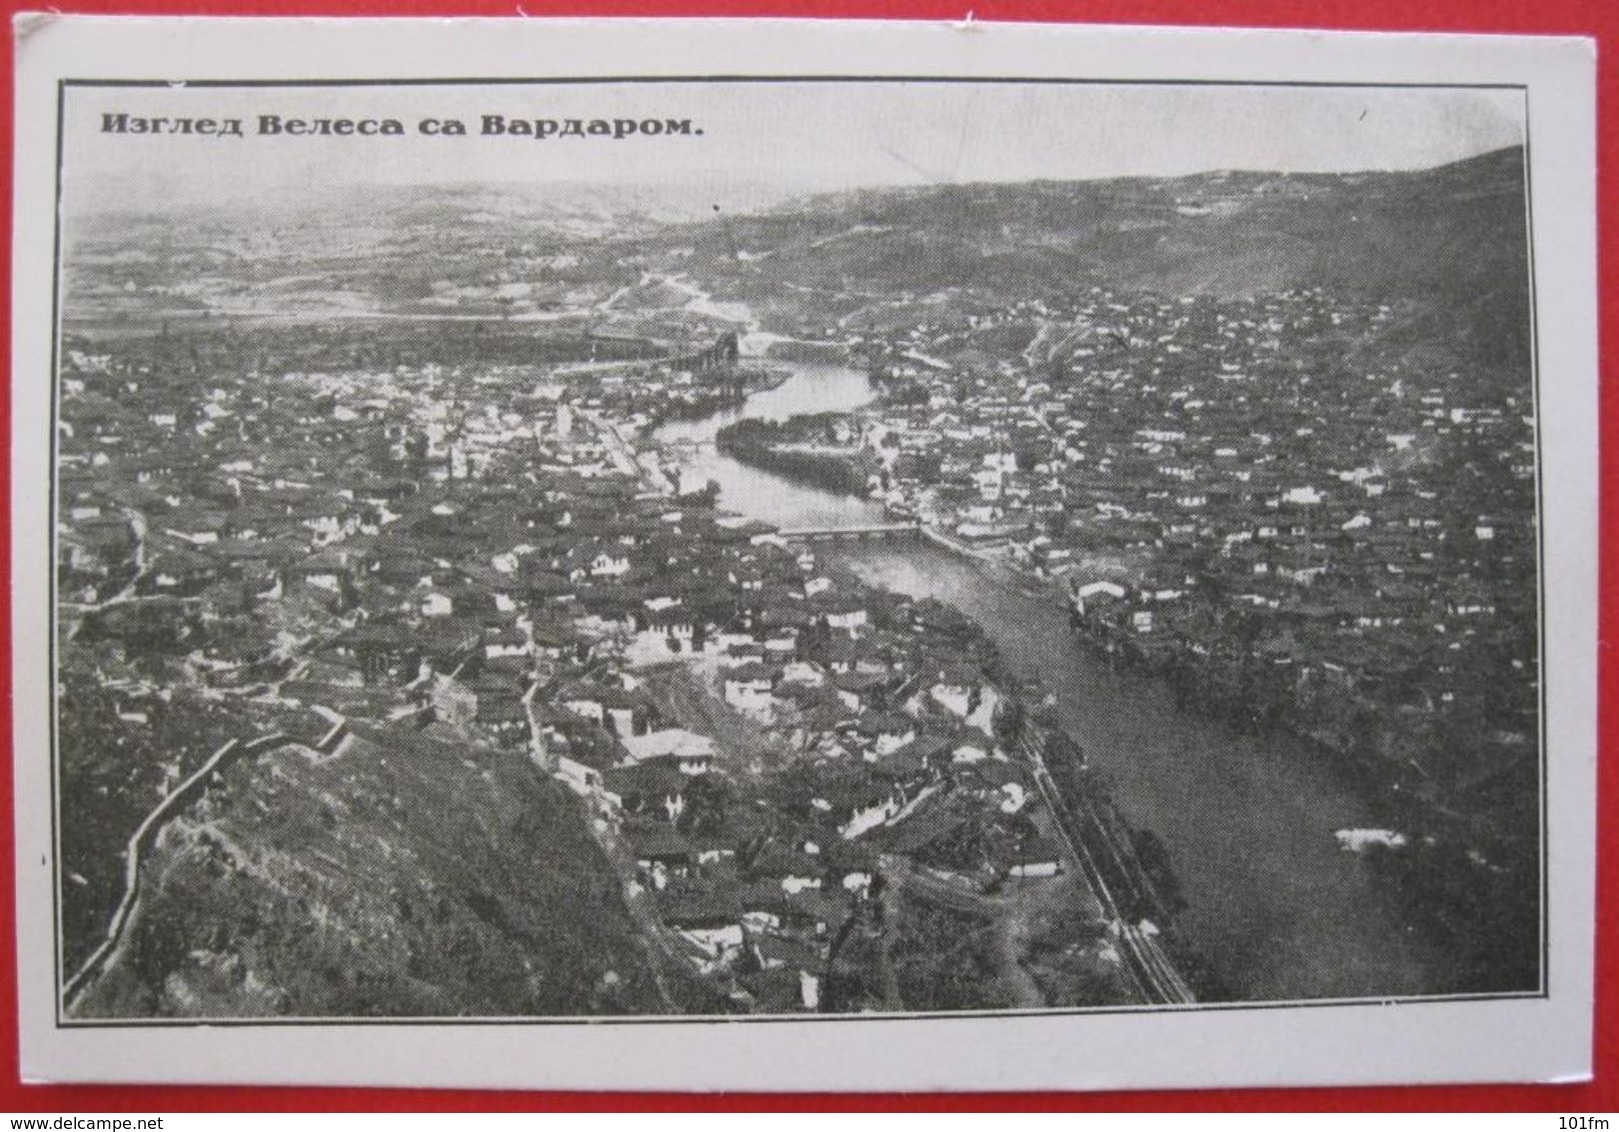 MACEDONIA - IZGLED VELESA SA VARDAROM - North Macedonia